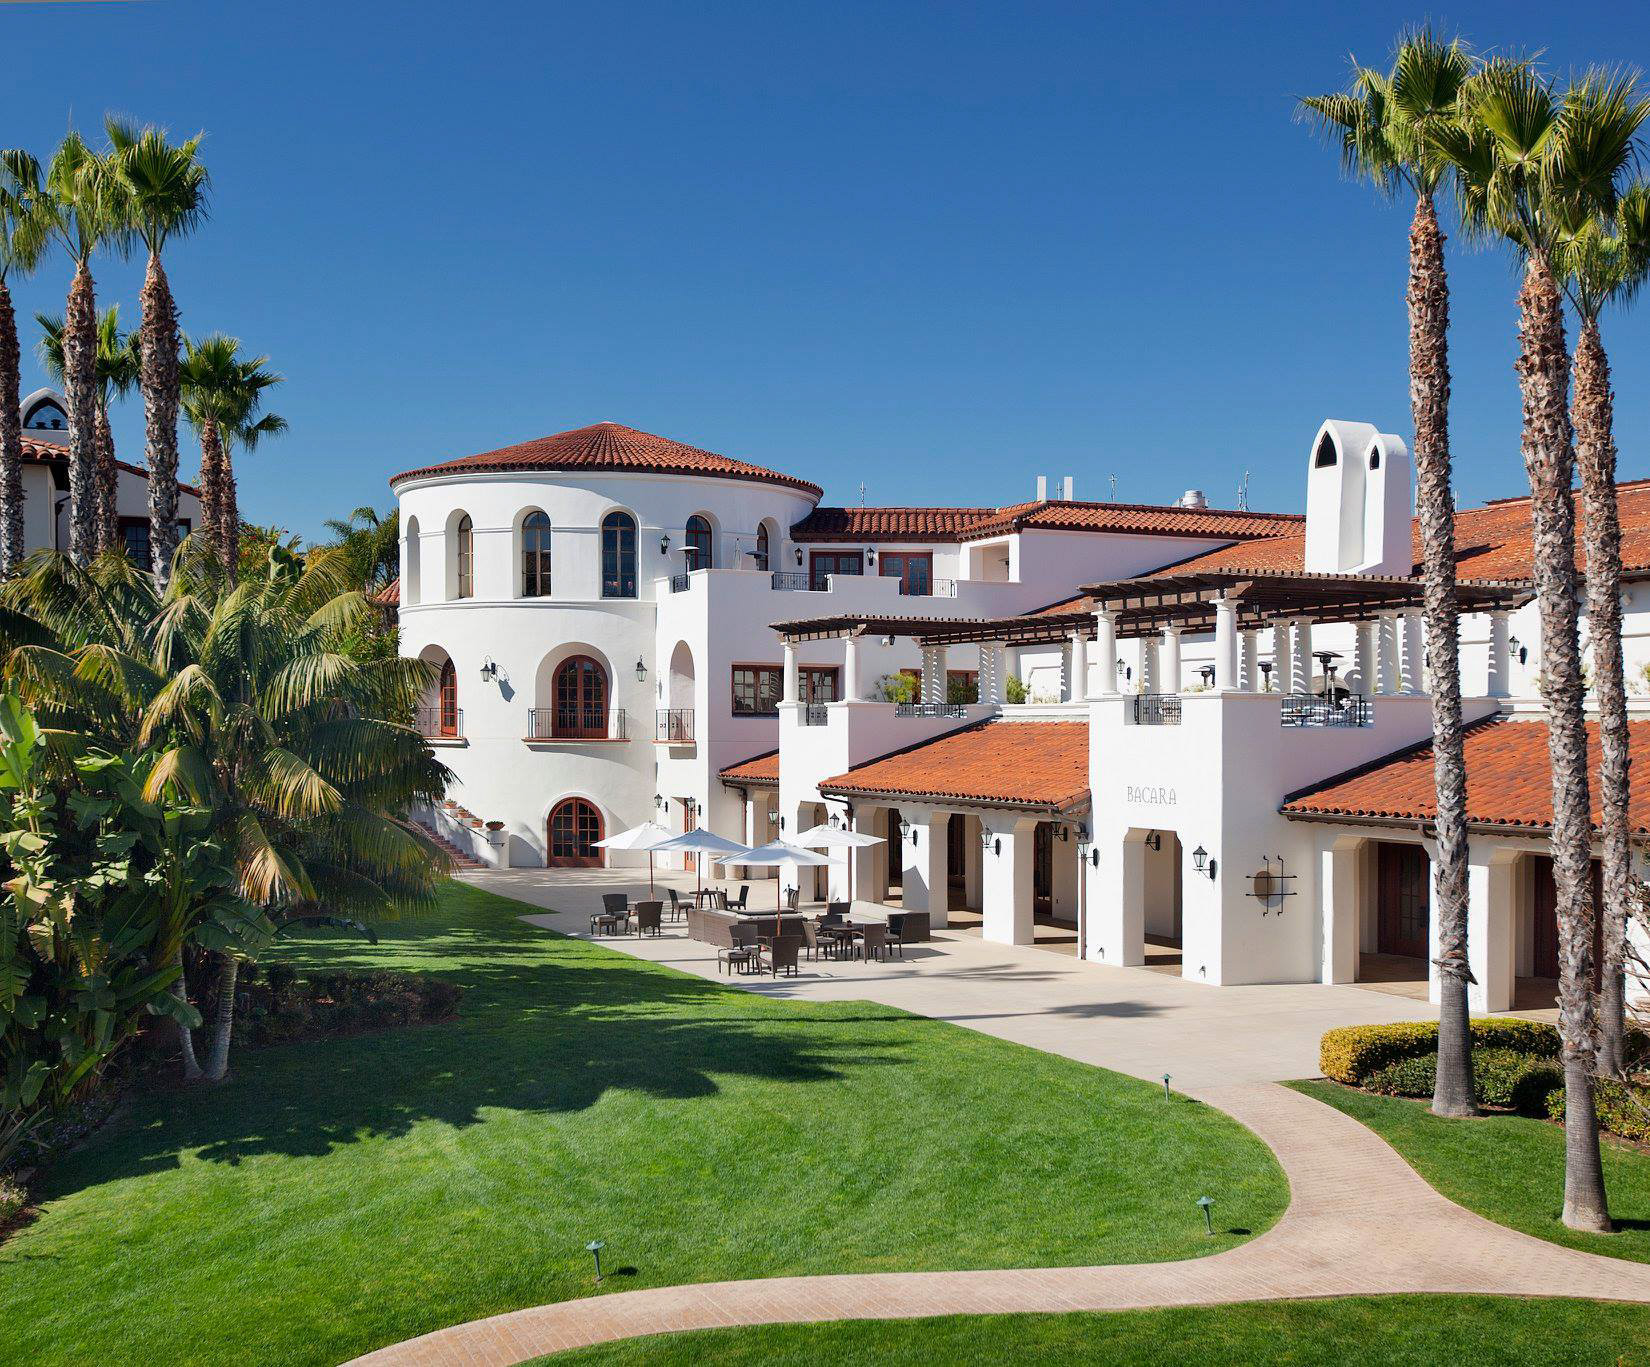 The Ritz-Carlton Bacara, Santa Barbara Resort - Santa Barbara, CA, USA - Exterior